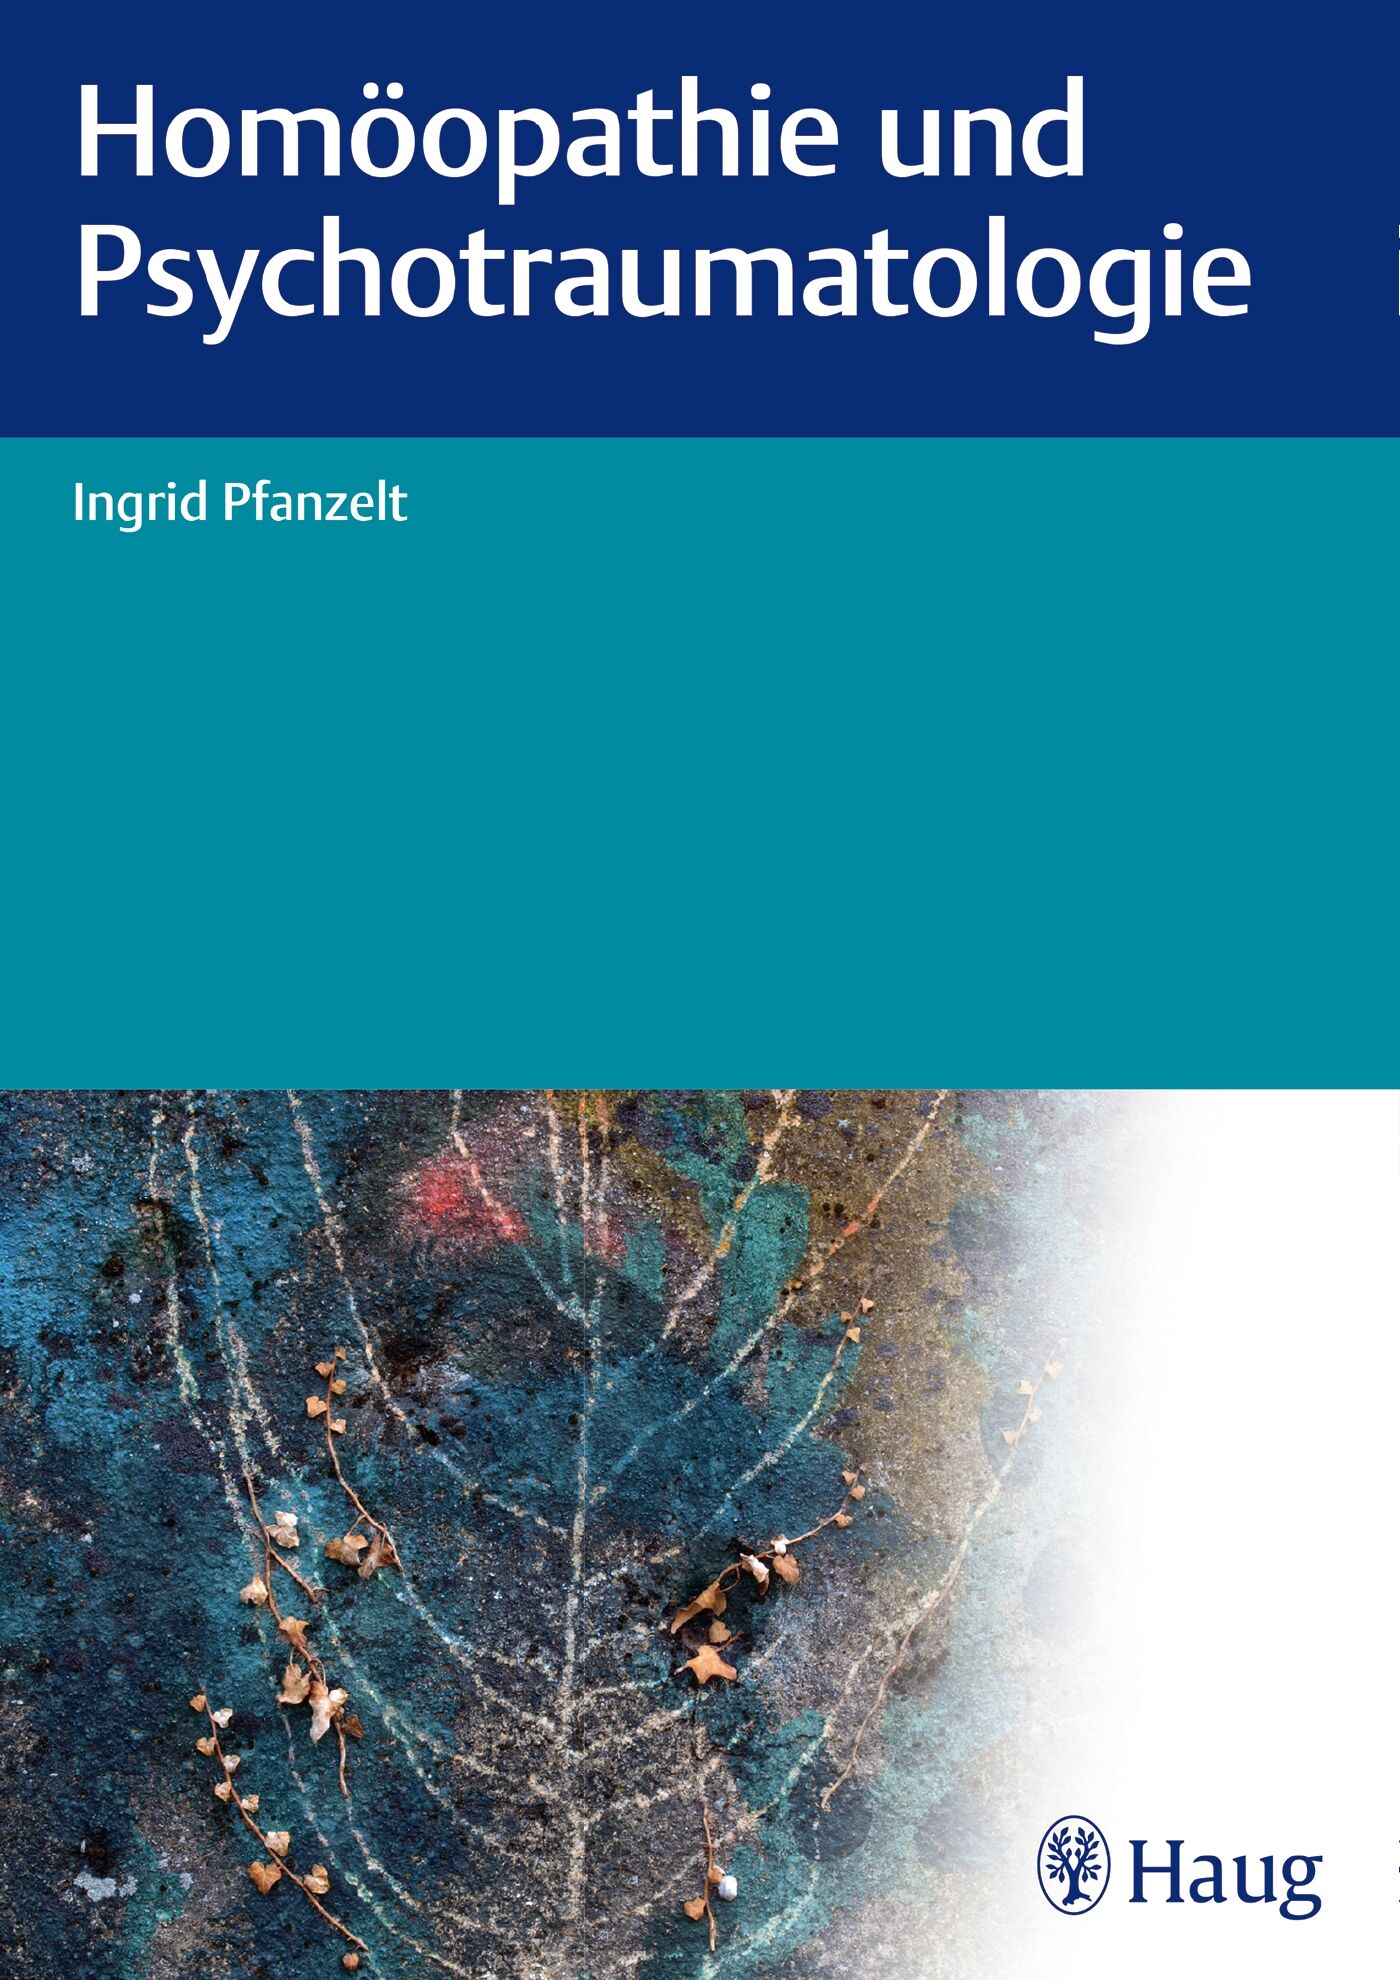 Homöopathie und Psychotraumatologie, 9783830476597